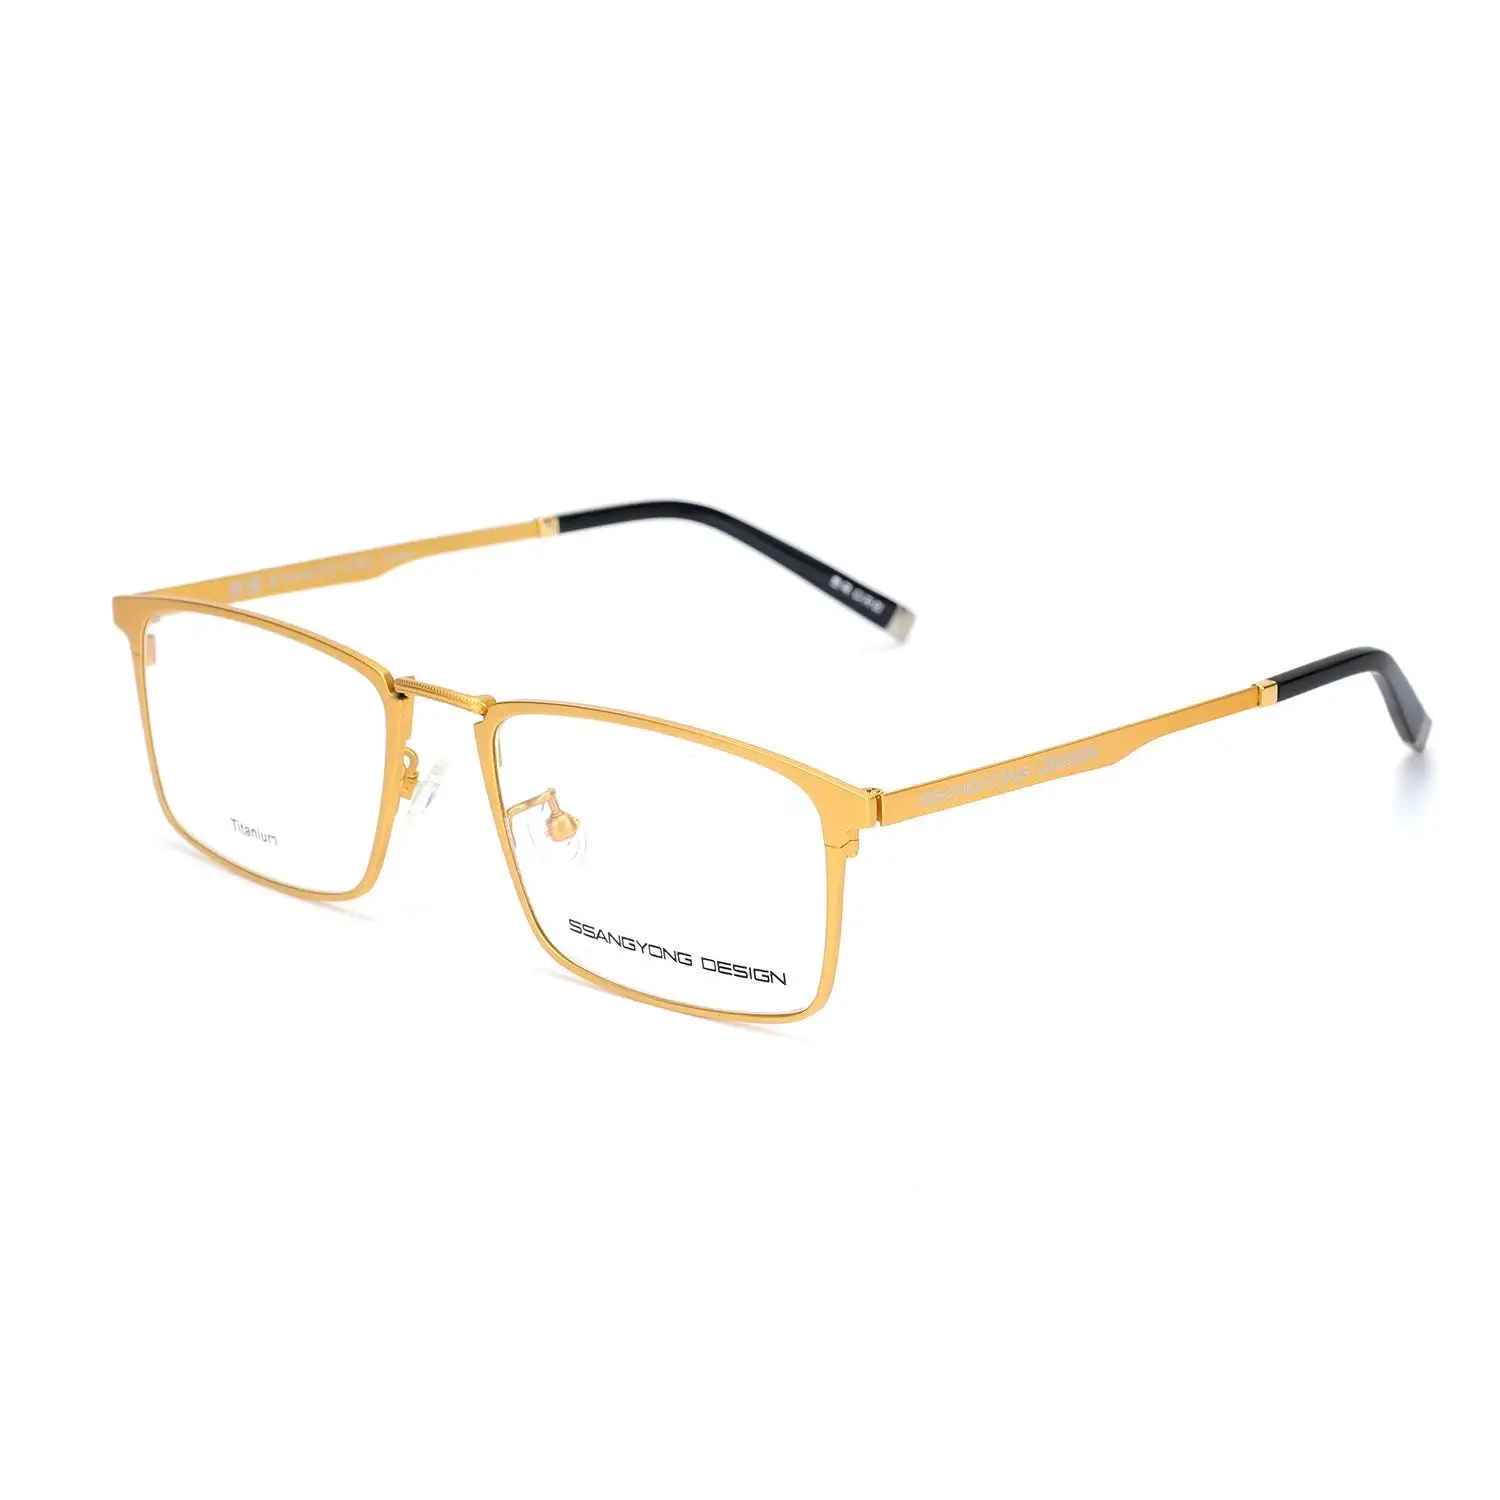 Cheap Rectangular Frame Glasses Find Rectangular Frame Glasses Deals